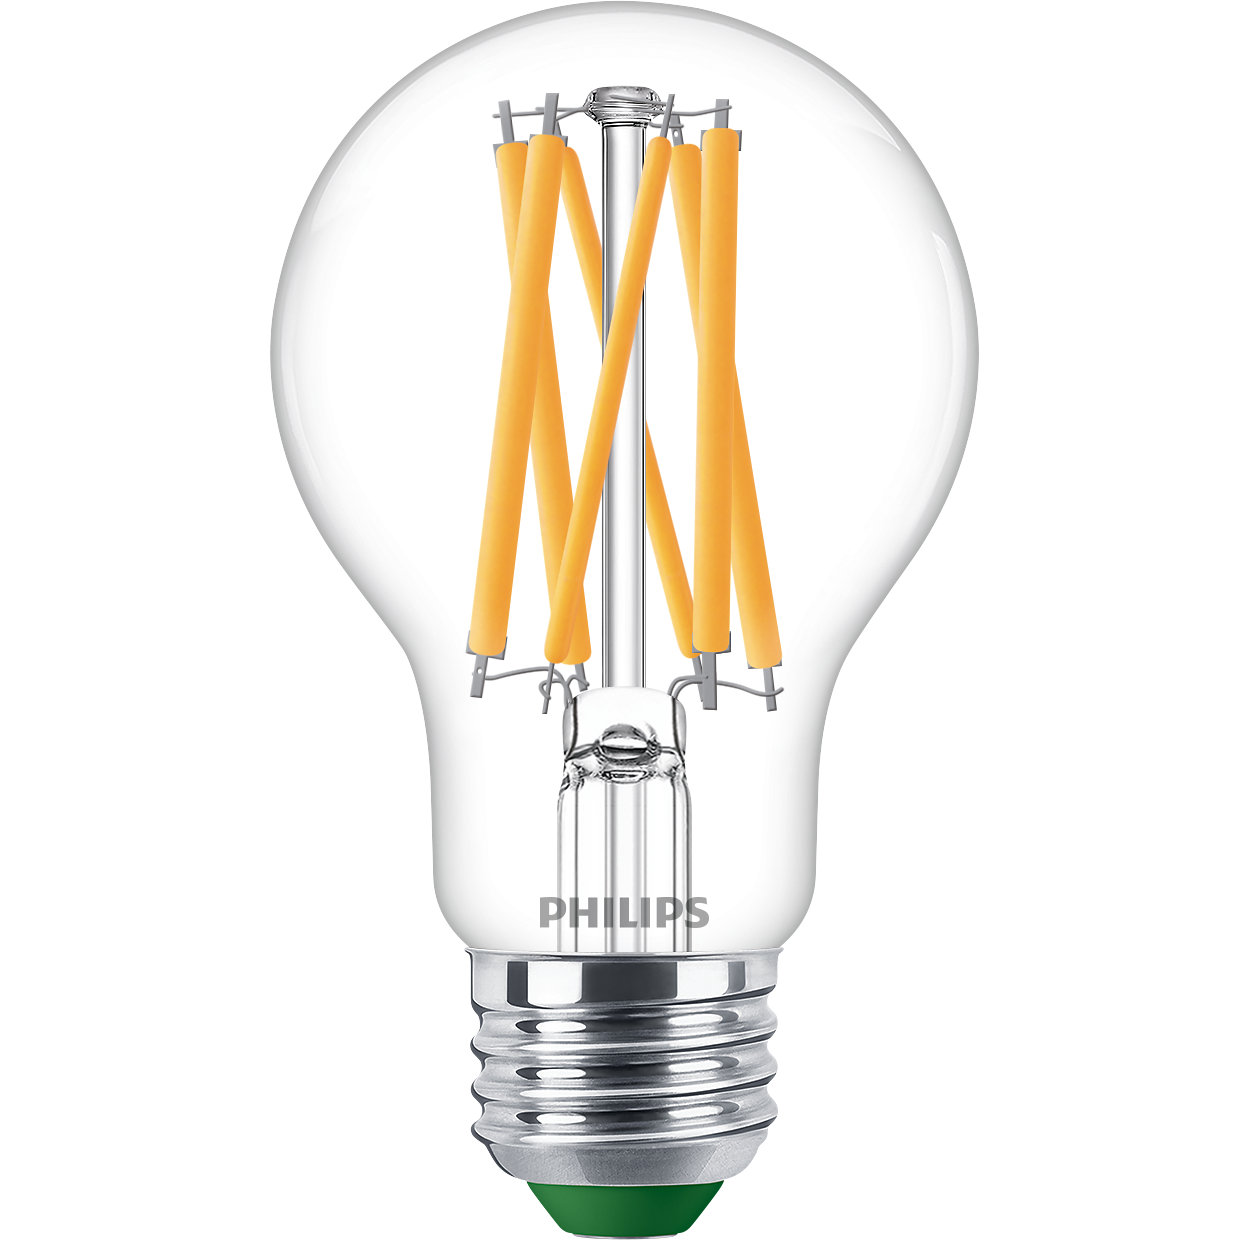 Lampe ultra efficace, offre la solution la plus durable et la plus écoénergétique pour vous